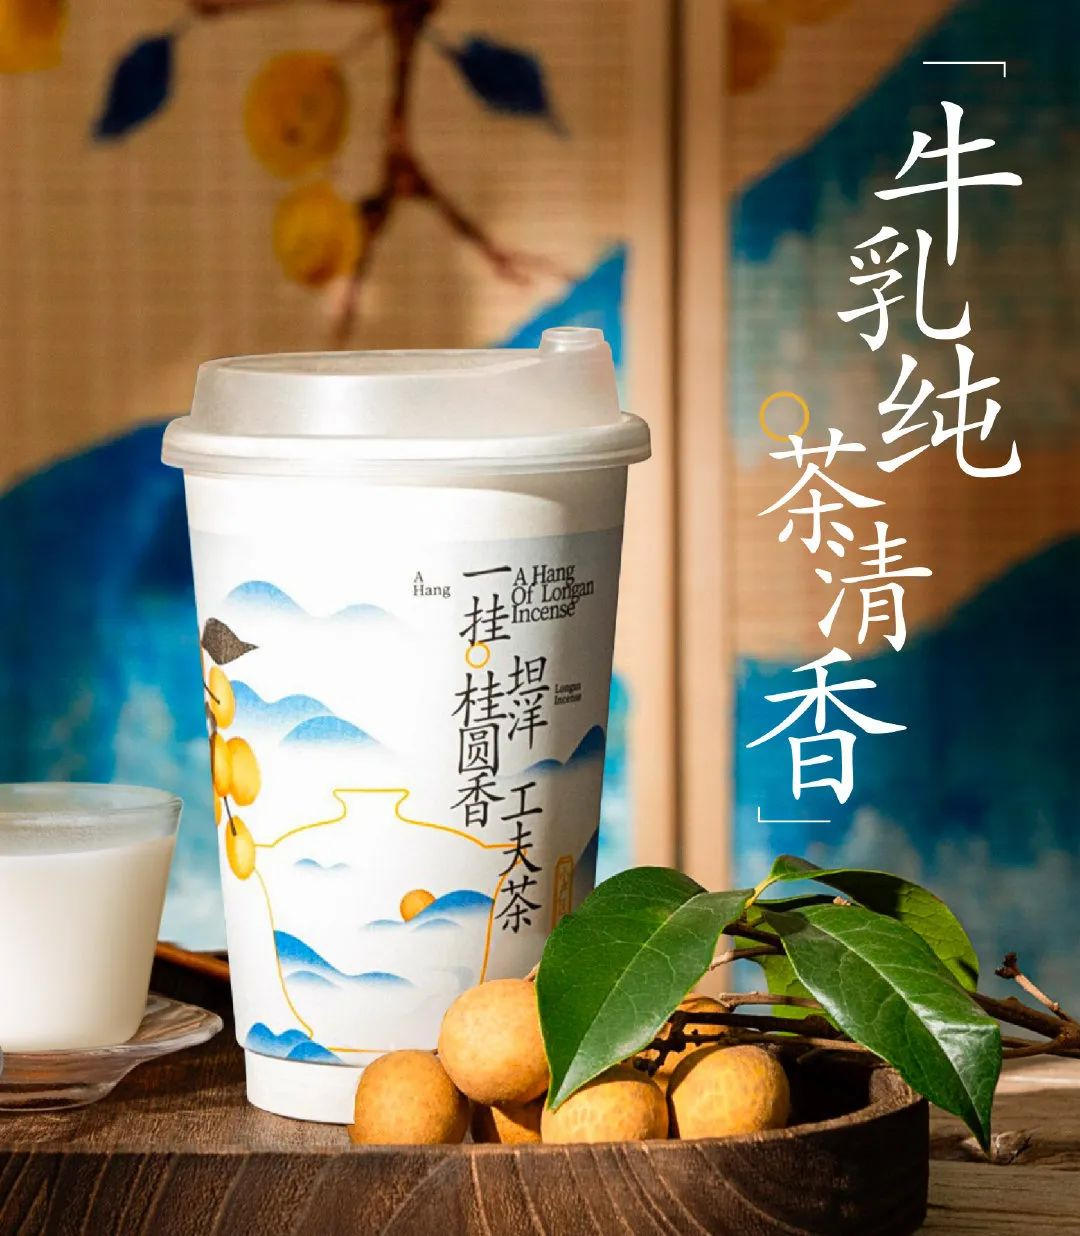 茶百道上新“坦洋工夫茶”系列-广告人干货库